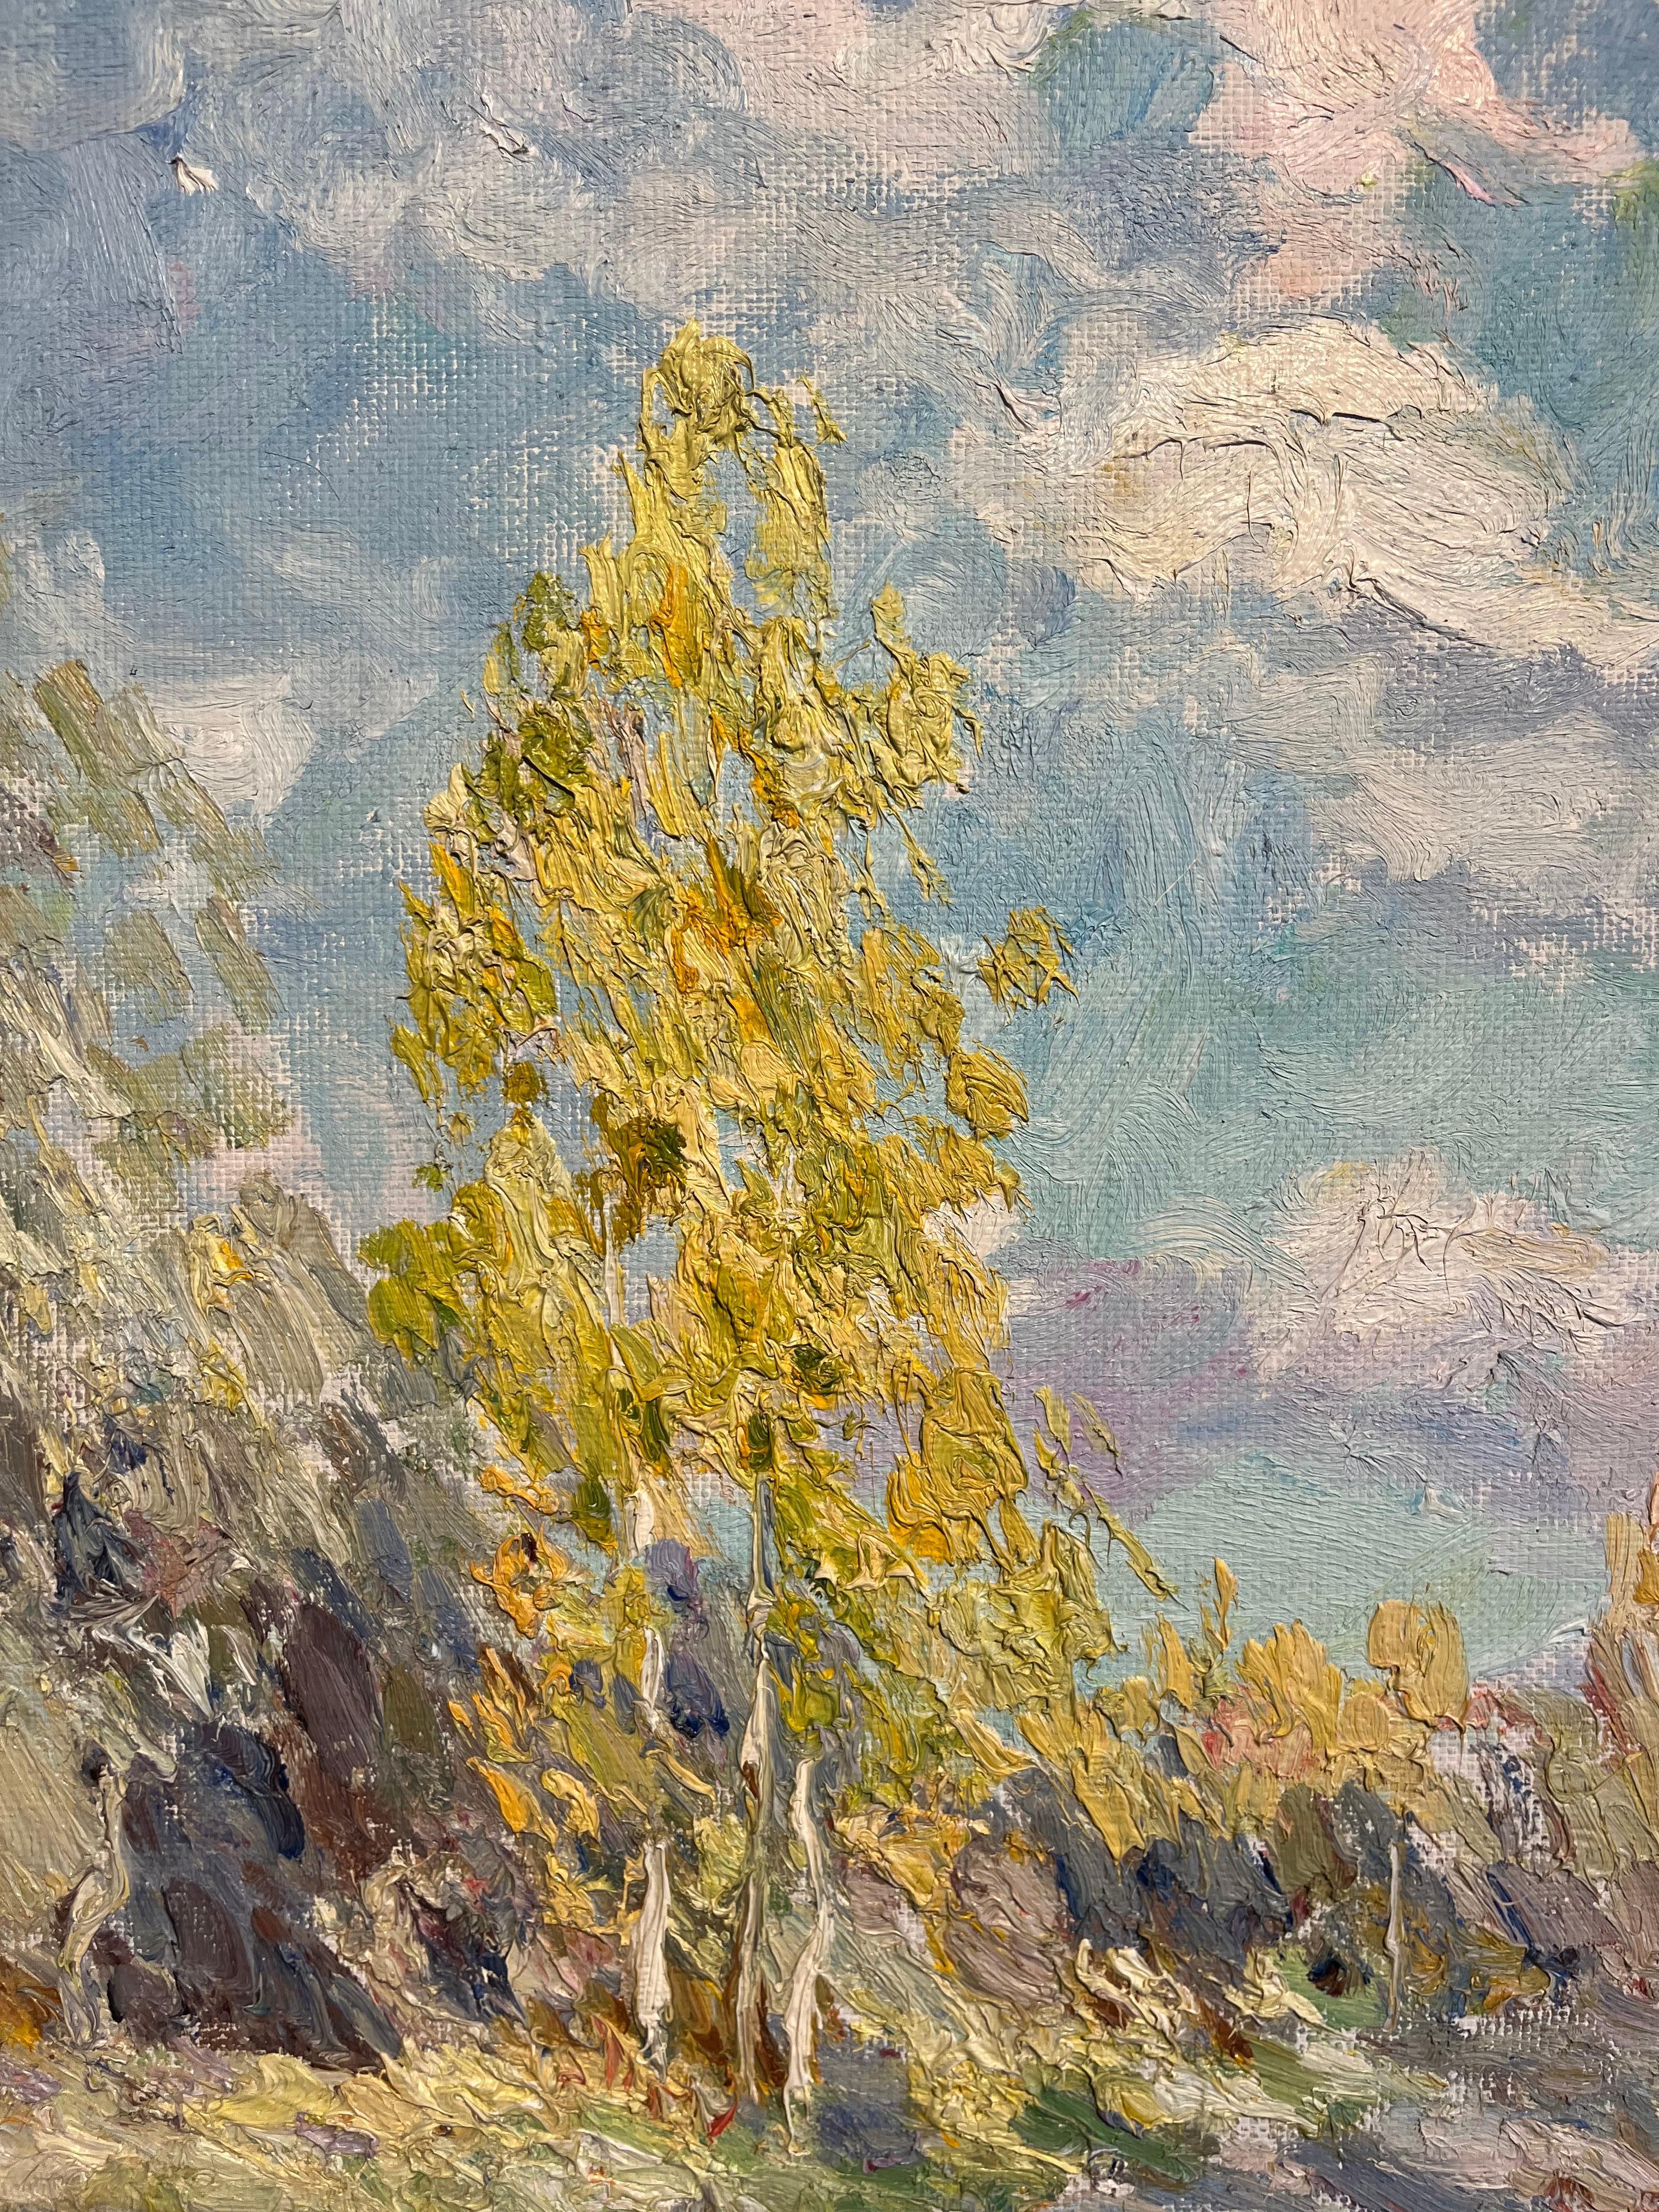 La peinture de Georgij Luminosa, très matérielle et lumineuse, s'inspire de ce paysage autrichien.
I toni sono Gialli e arancioni delle foglie d'autunno, Il cielo azzurro e luminoso con nuvole del nord. 
  